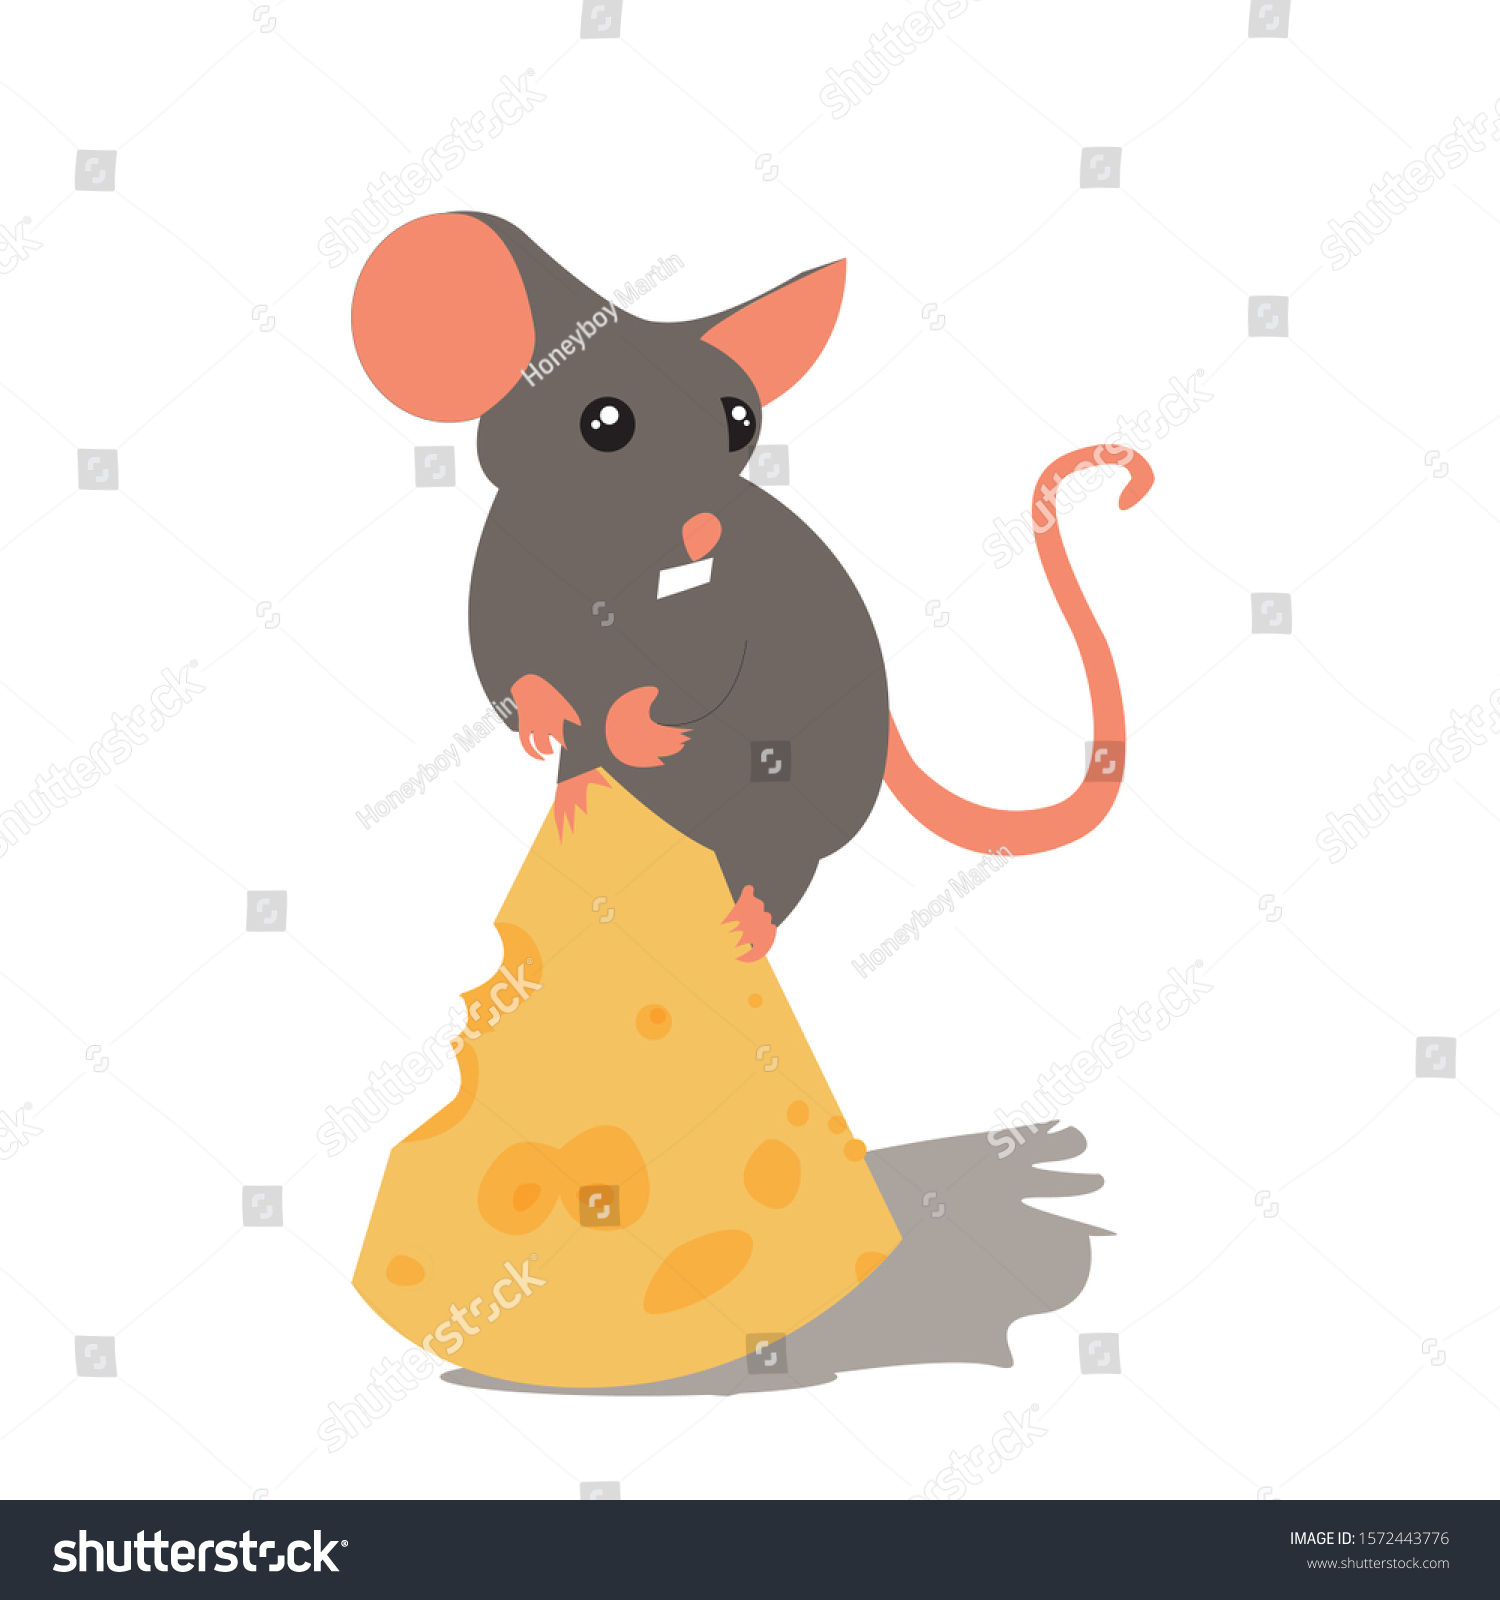 チーズを盗んだ小さなおかしなネズミ 灰色のネズミは大きな穴のあいたチーズを食べたがっている 子ども向けの動物の明るいイラスト ベクター画像 分離型 のベクター画像素材 ロイヤリティフリー Shutterstock